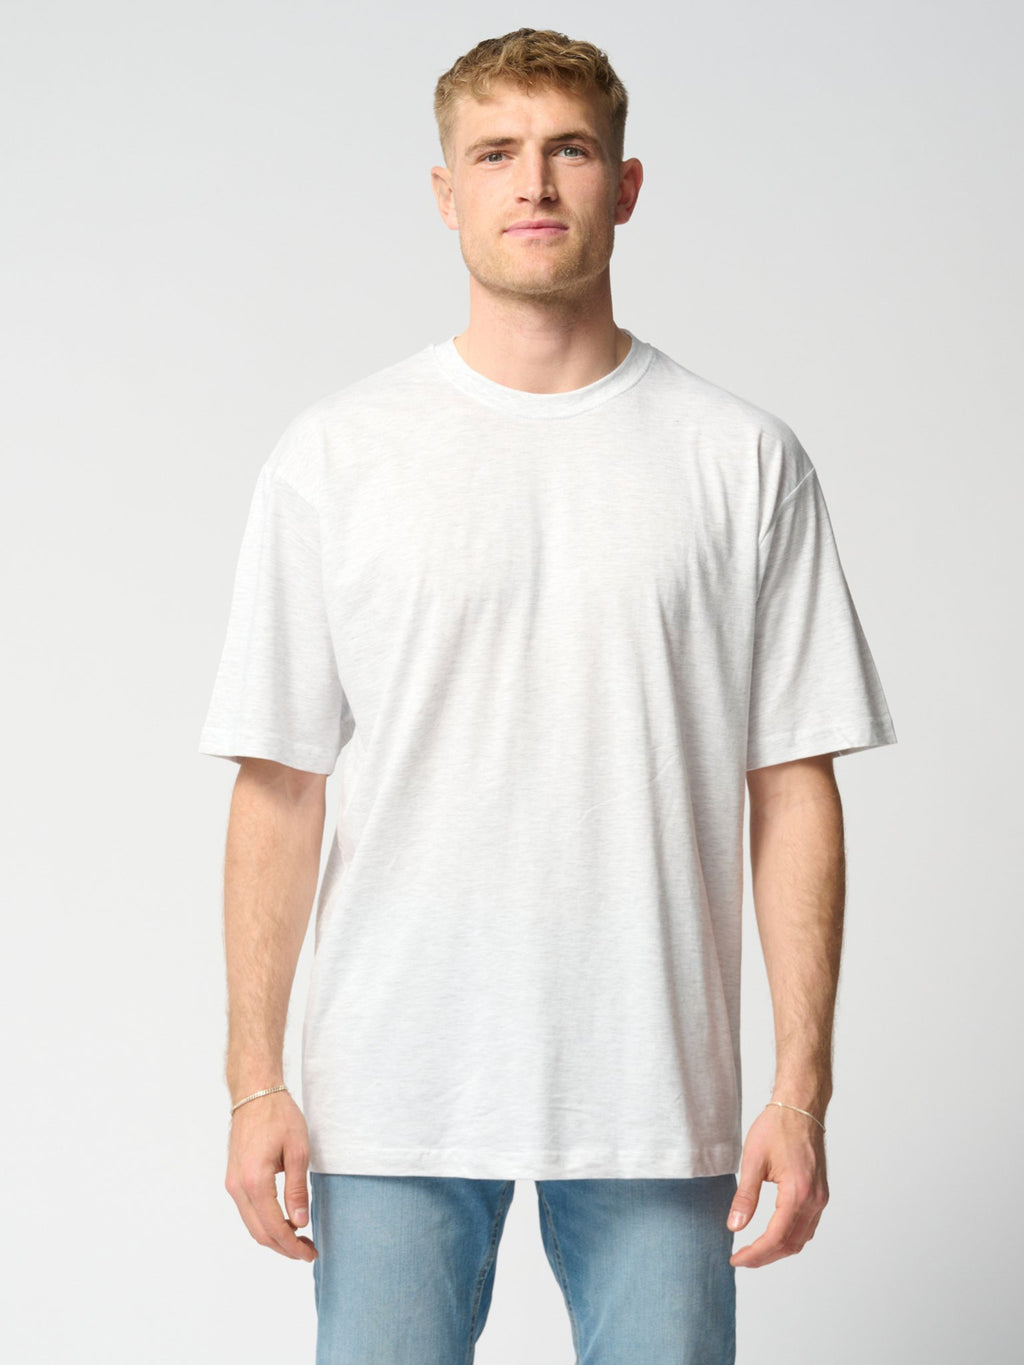 Camisetas de gran tamaño - Paquete (9 uds.)